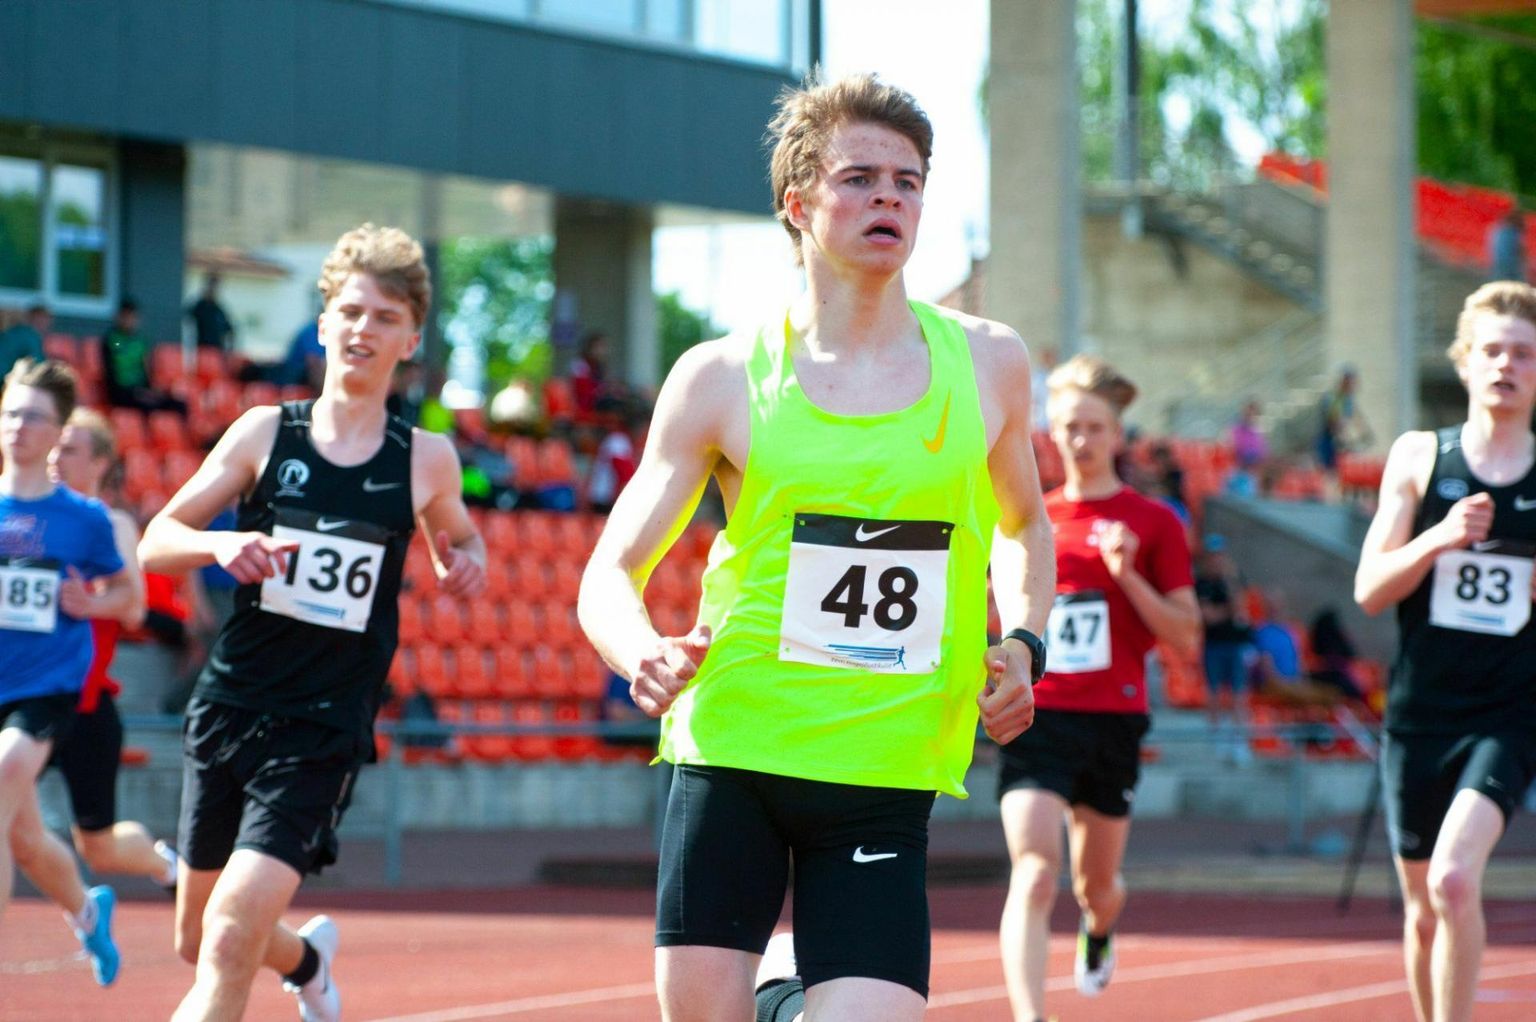 Eesti noorte karikavõistluste käigus täideti seitse U18 Euroopa meistrivõistluste normi. 100 metri jooksus täitis normi Andreas Kase (KJK Järvala).